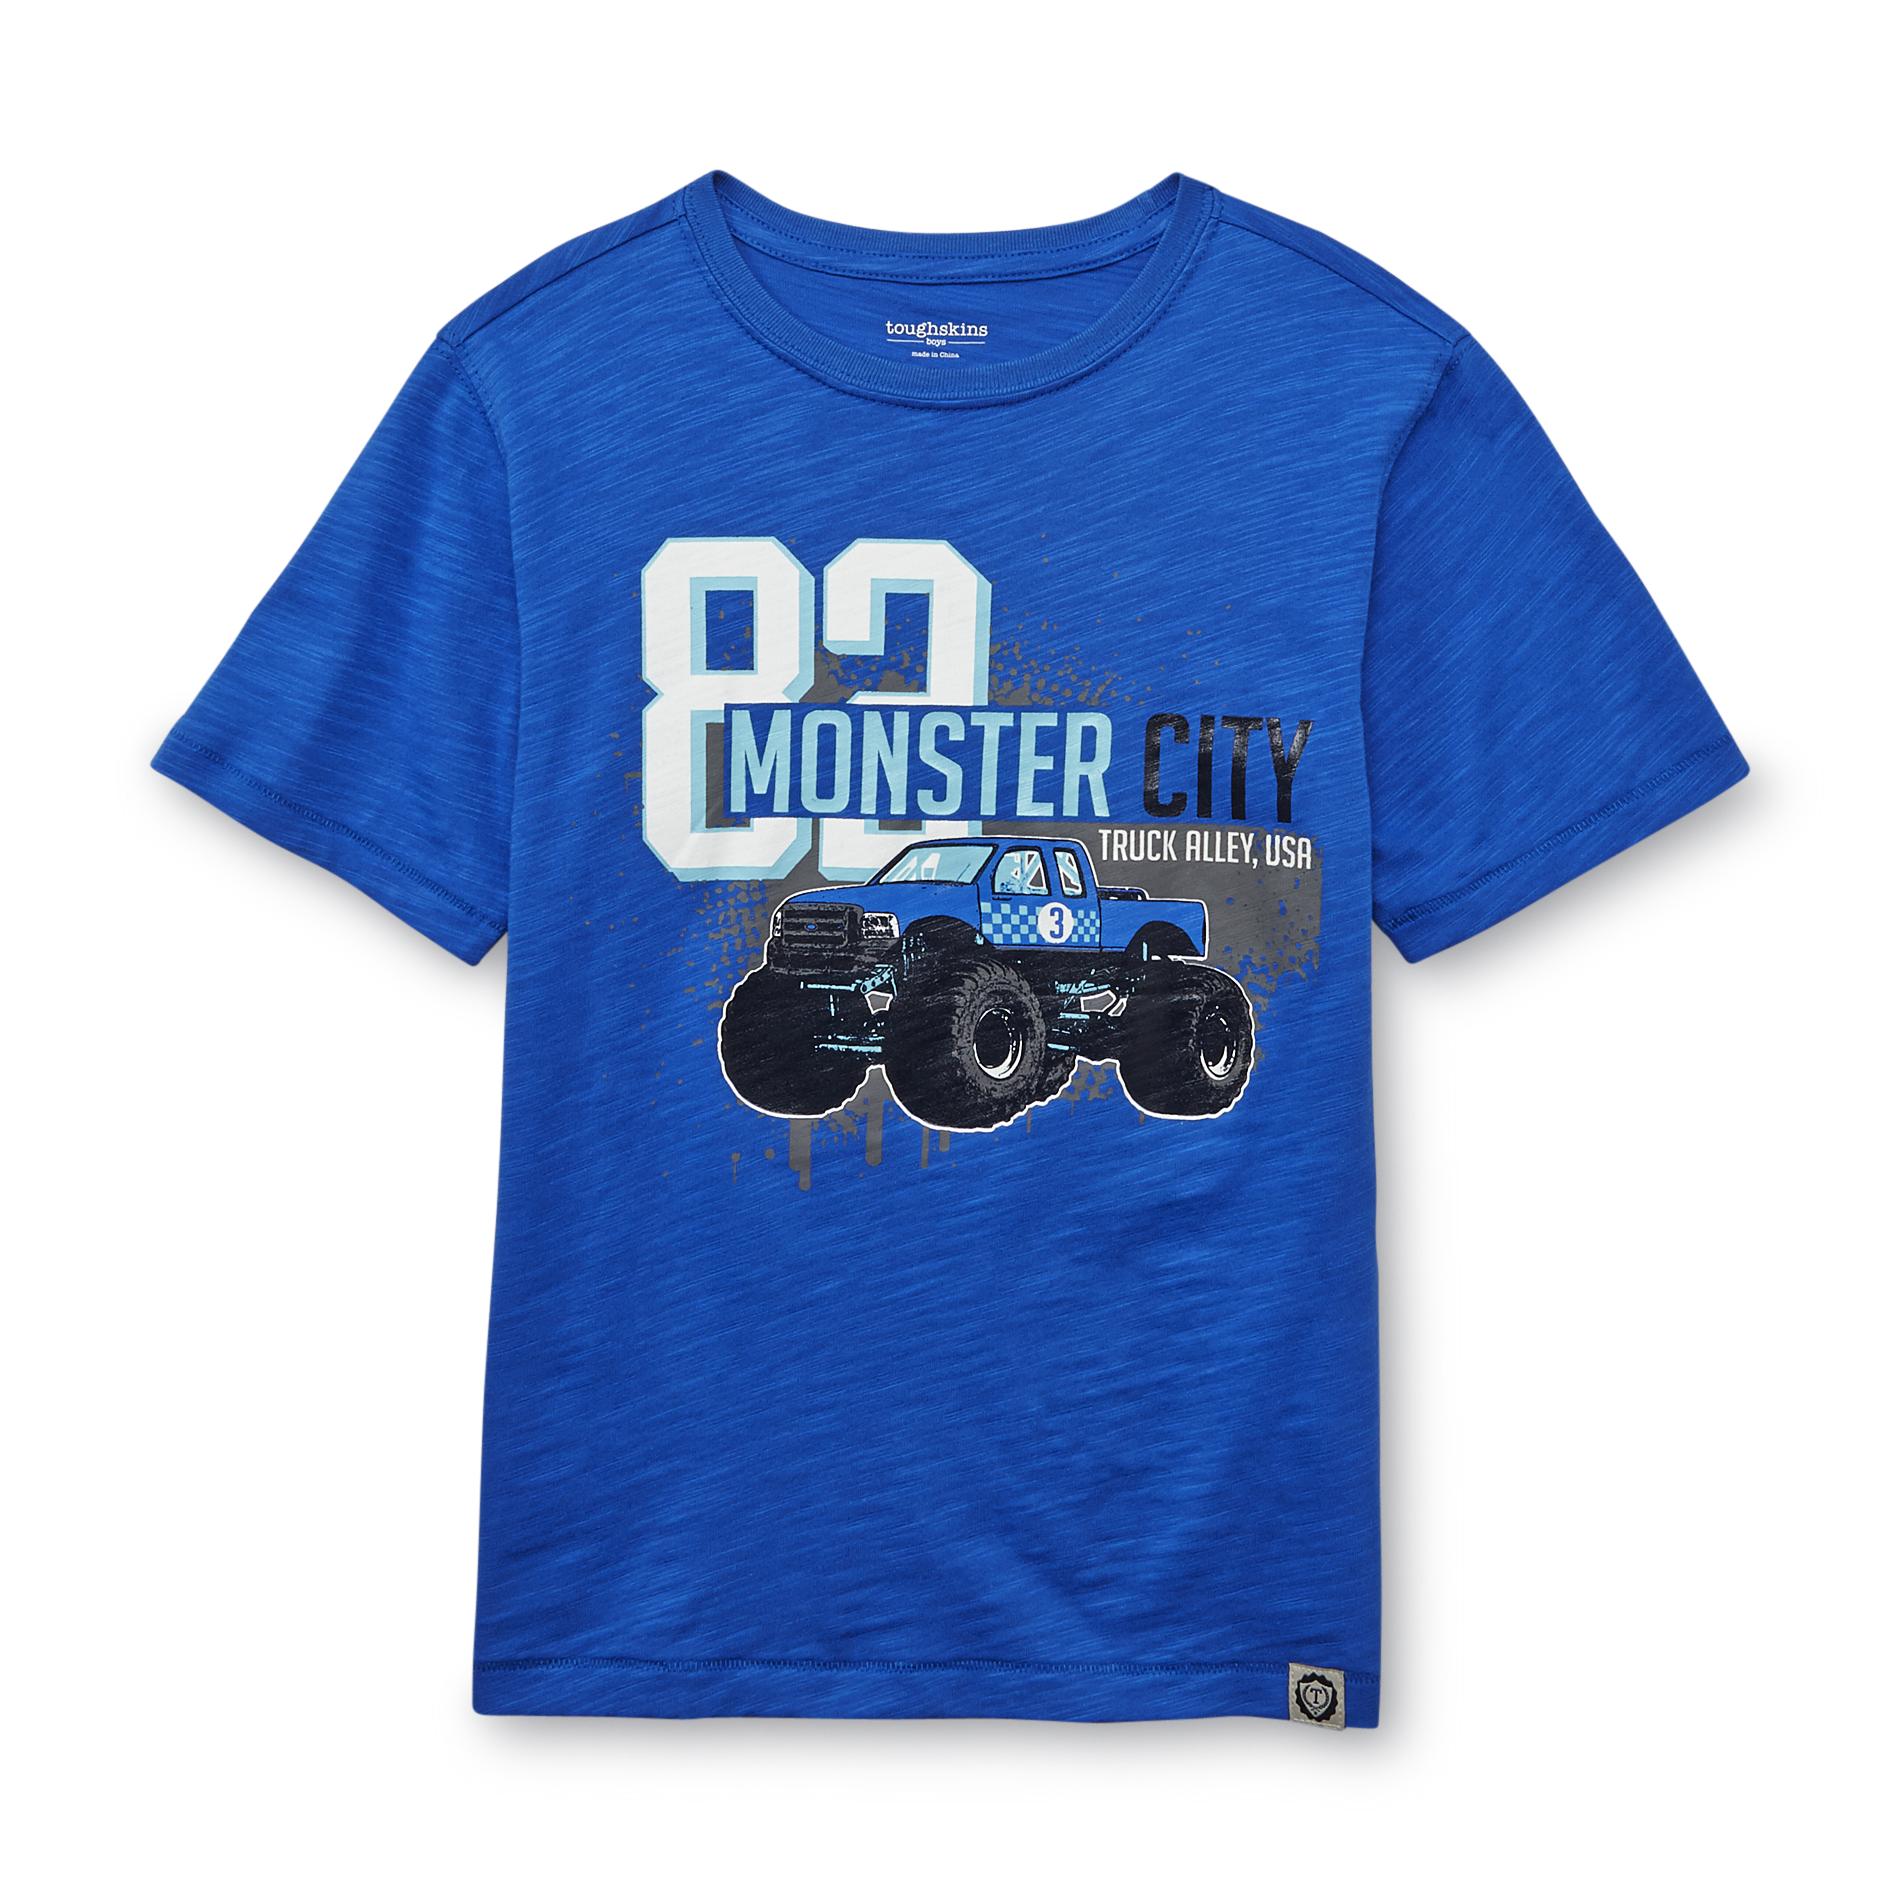 Toughskins Boy's Graphic T-Shirt - Monster Truck